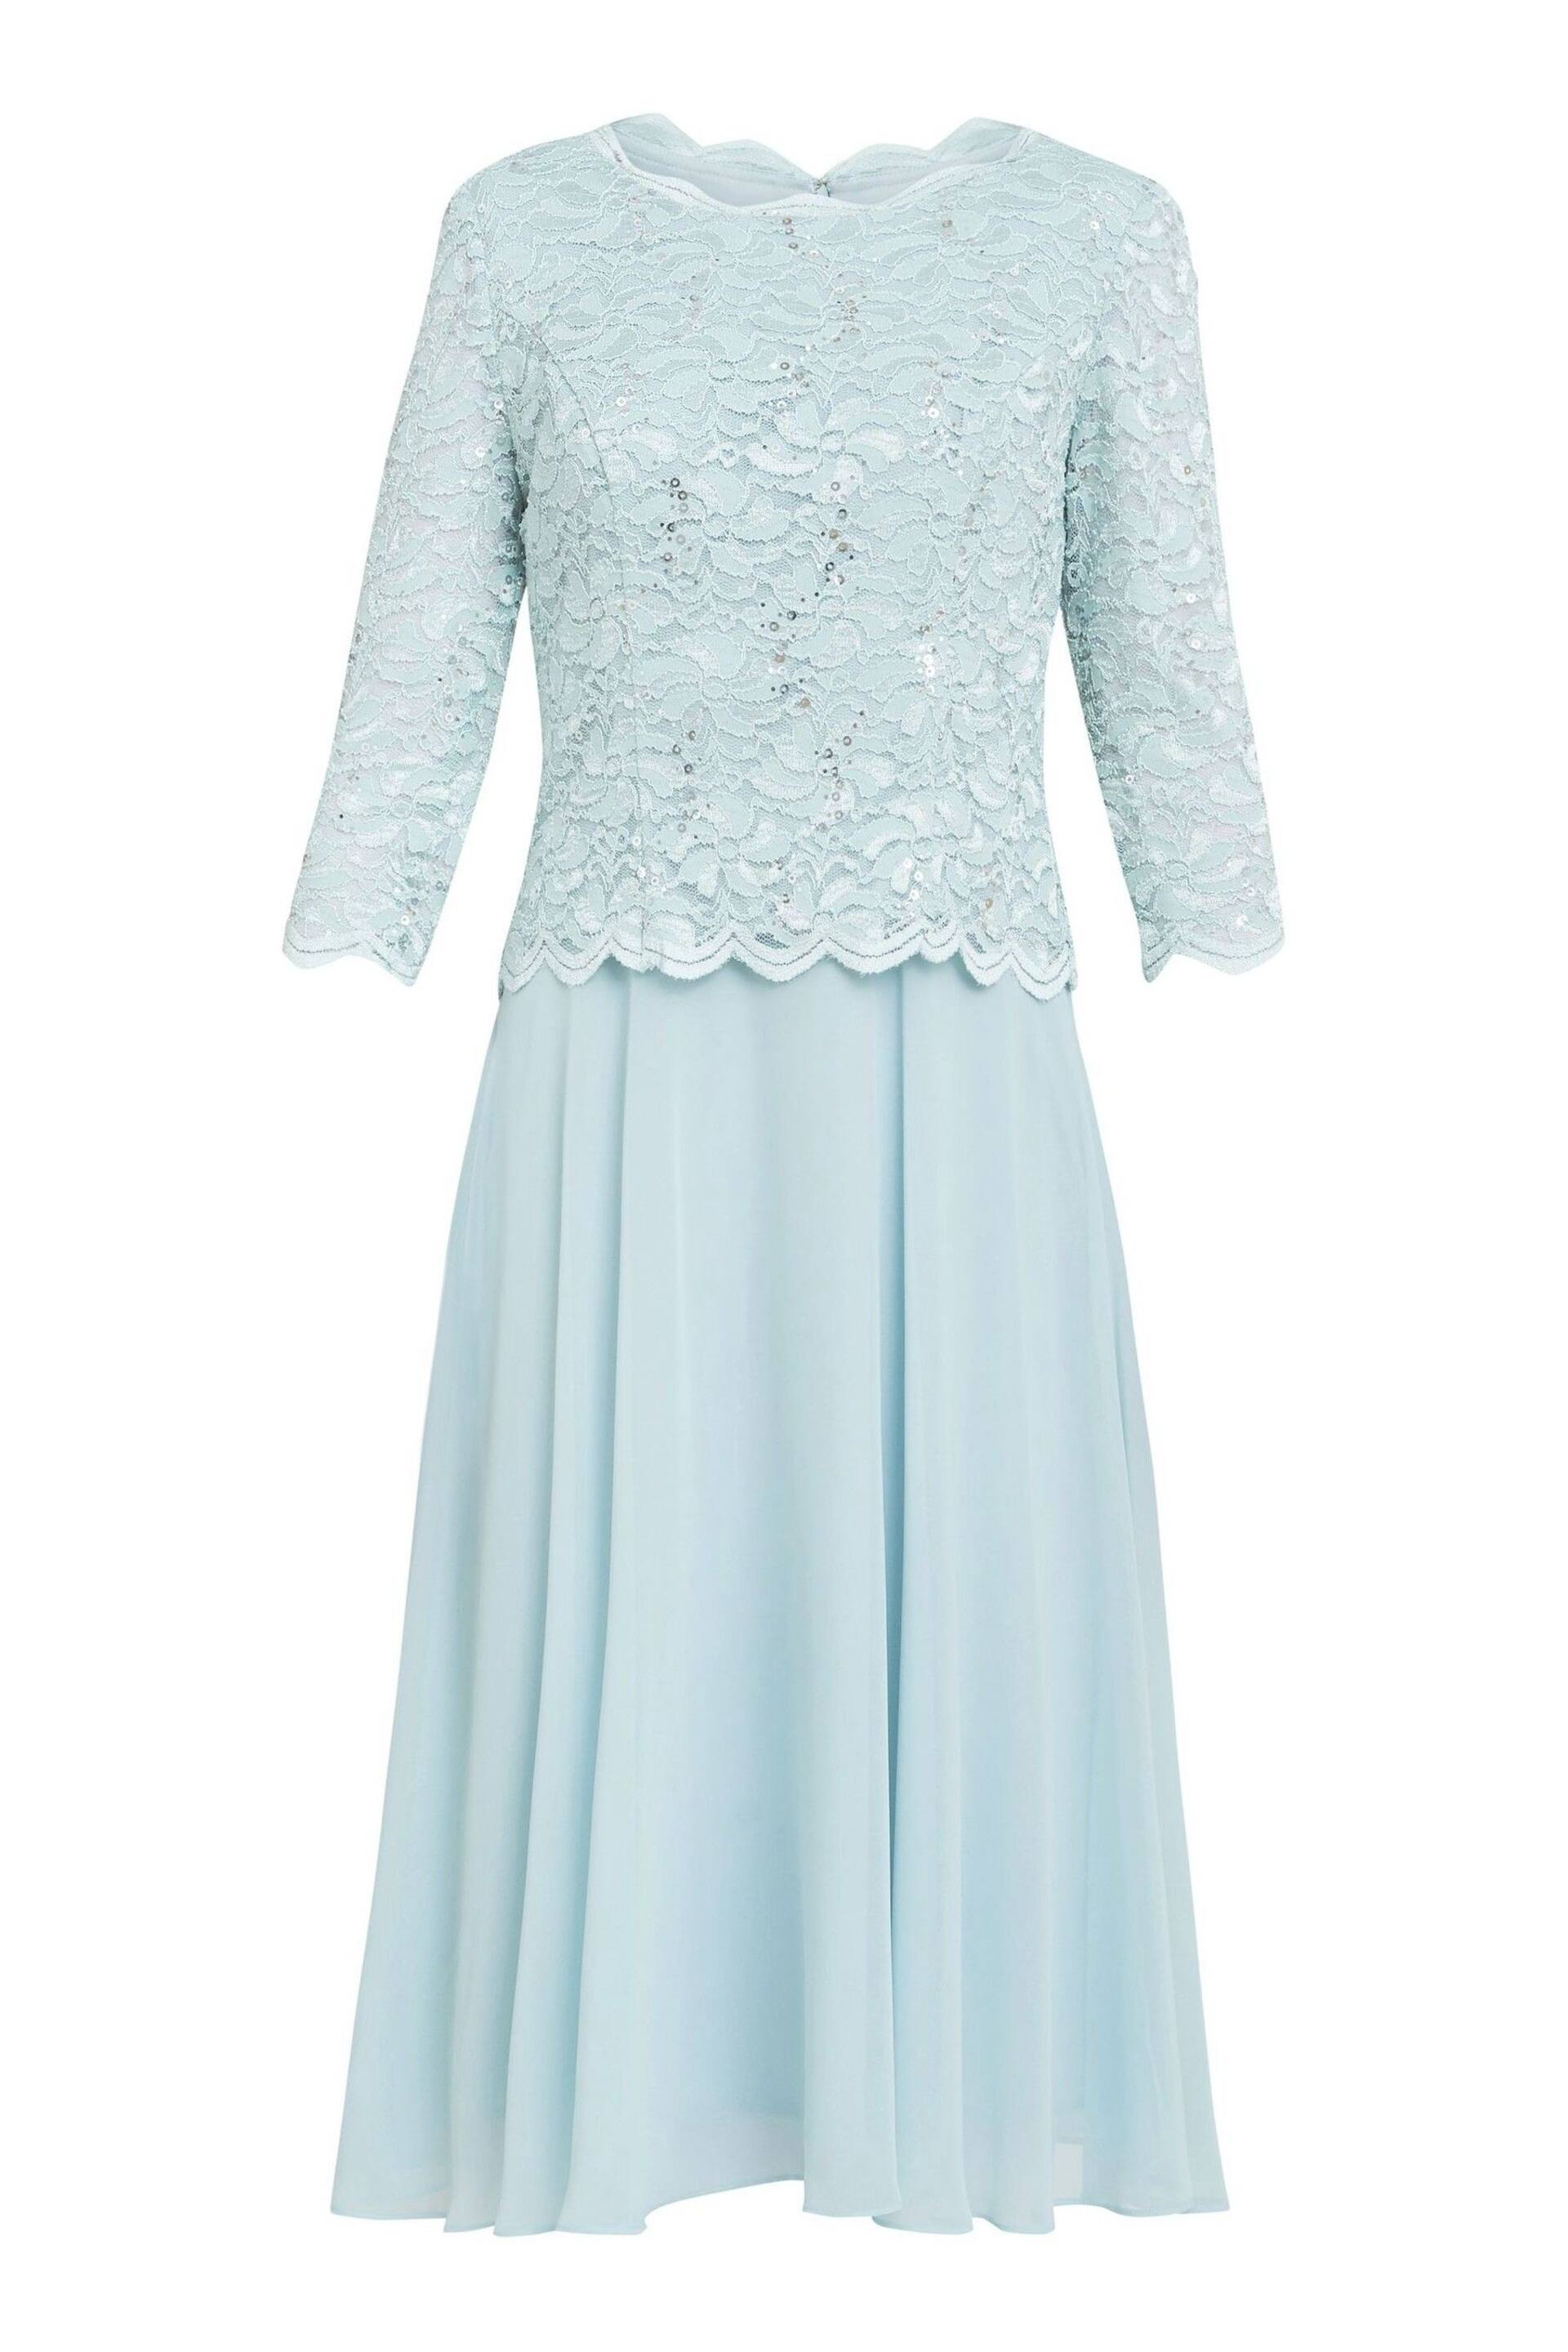 Gina Bacconi Rona Midi Dress With Lace Bodice & Chiffon Skirt - Image 6 of 6